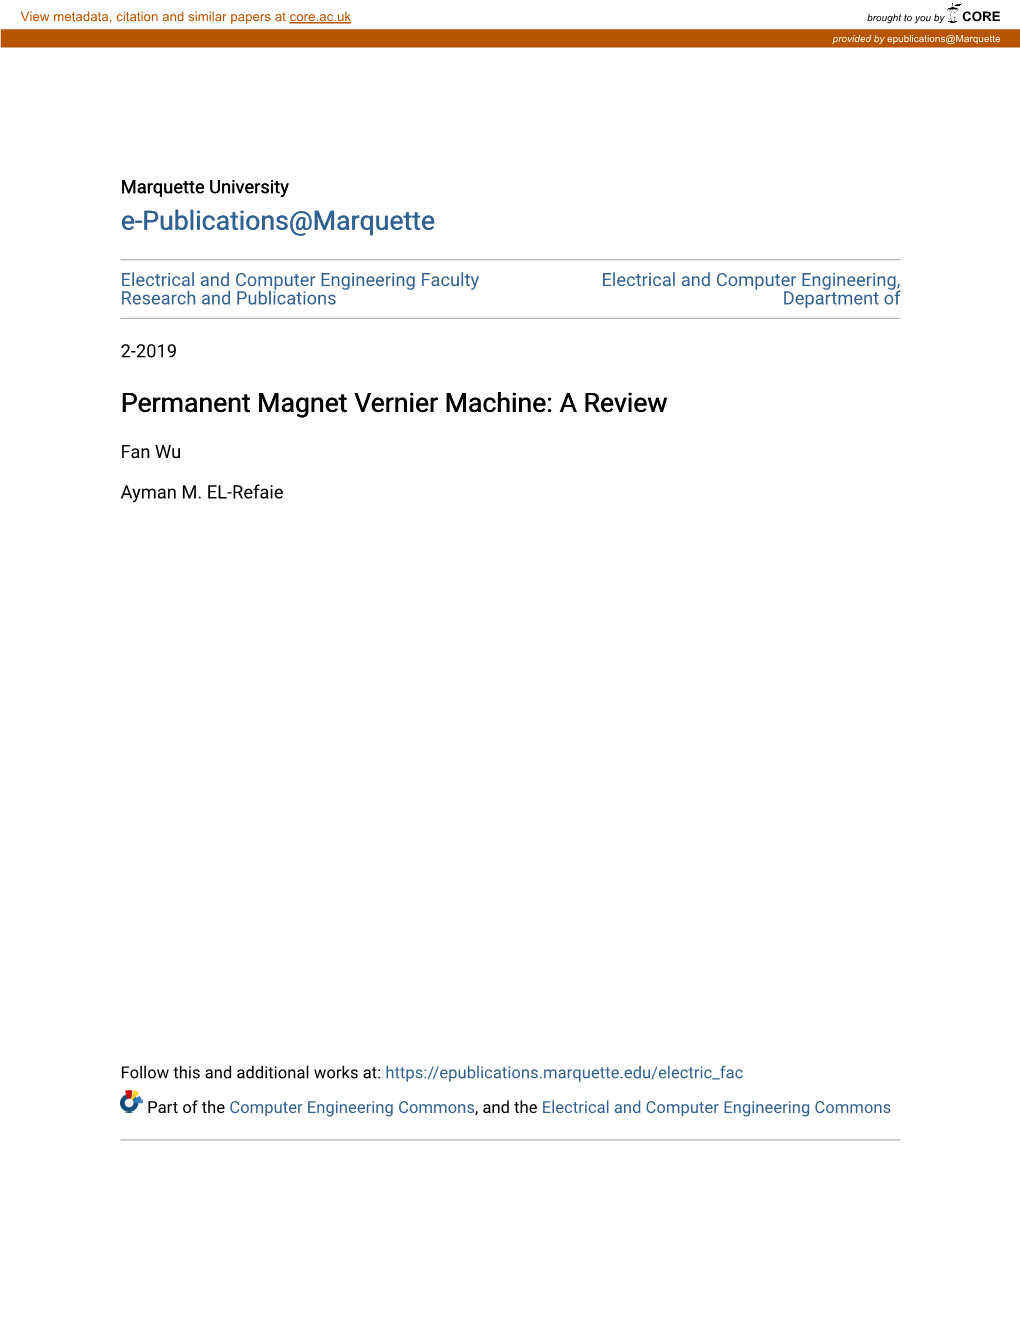 Permanent Magnet Vernier Machine: a Review